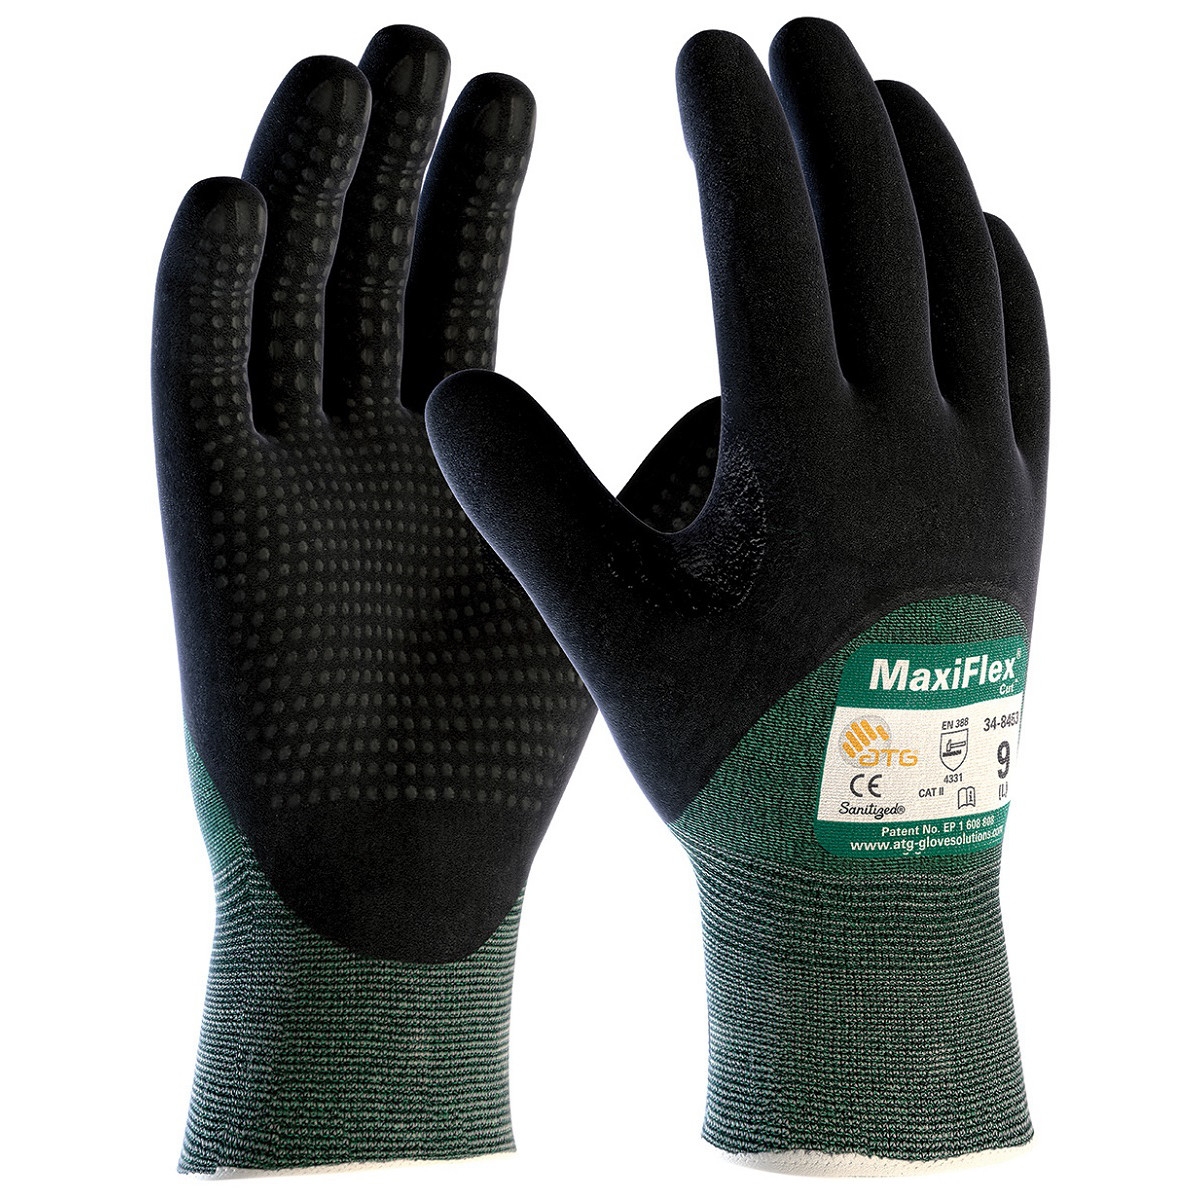 Hyper Tough HPPE ANSI A4 Anti Cut PU Coated Work Gloves, Full Fingers,  Men's Medium Size